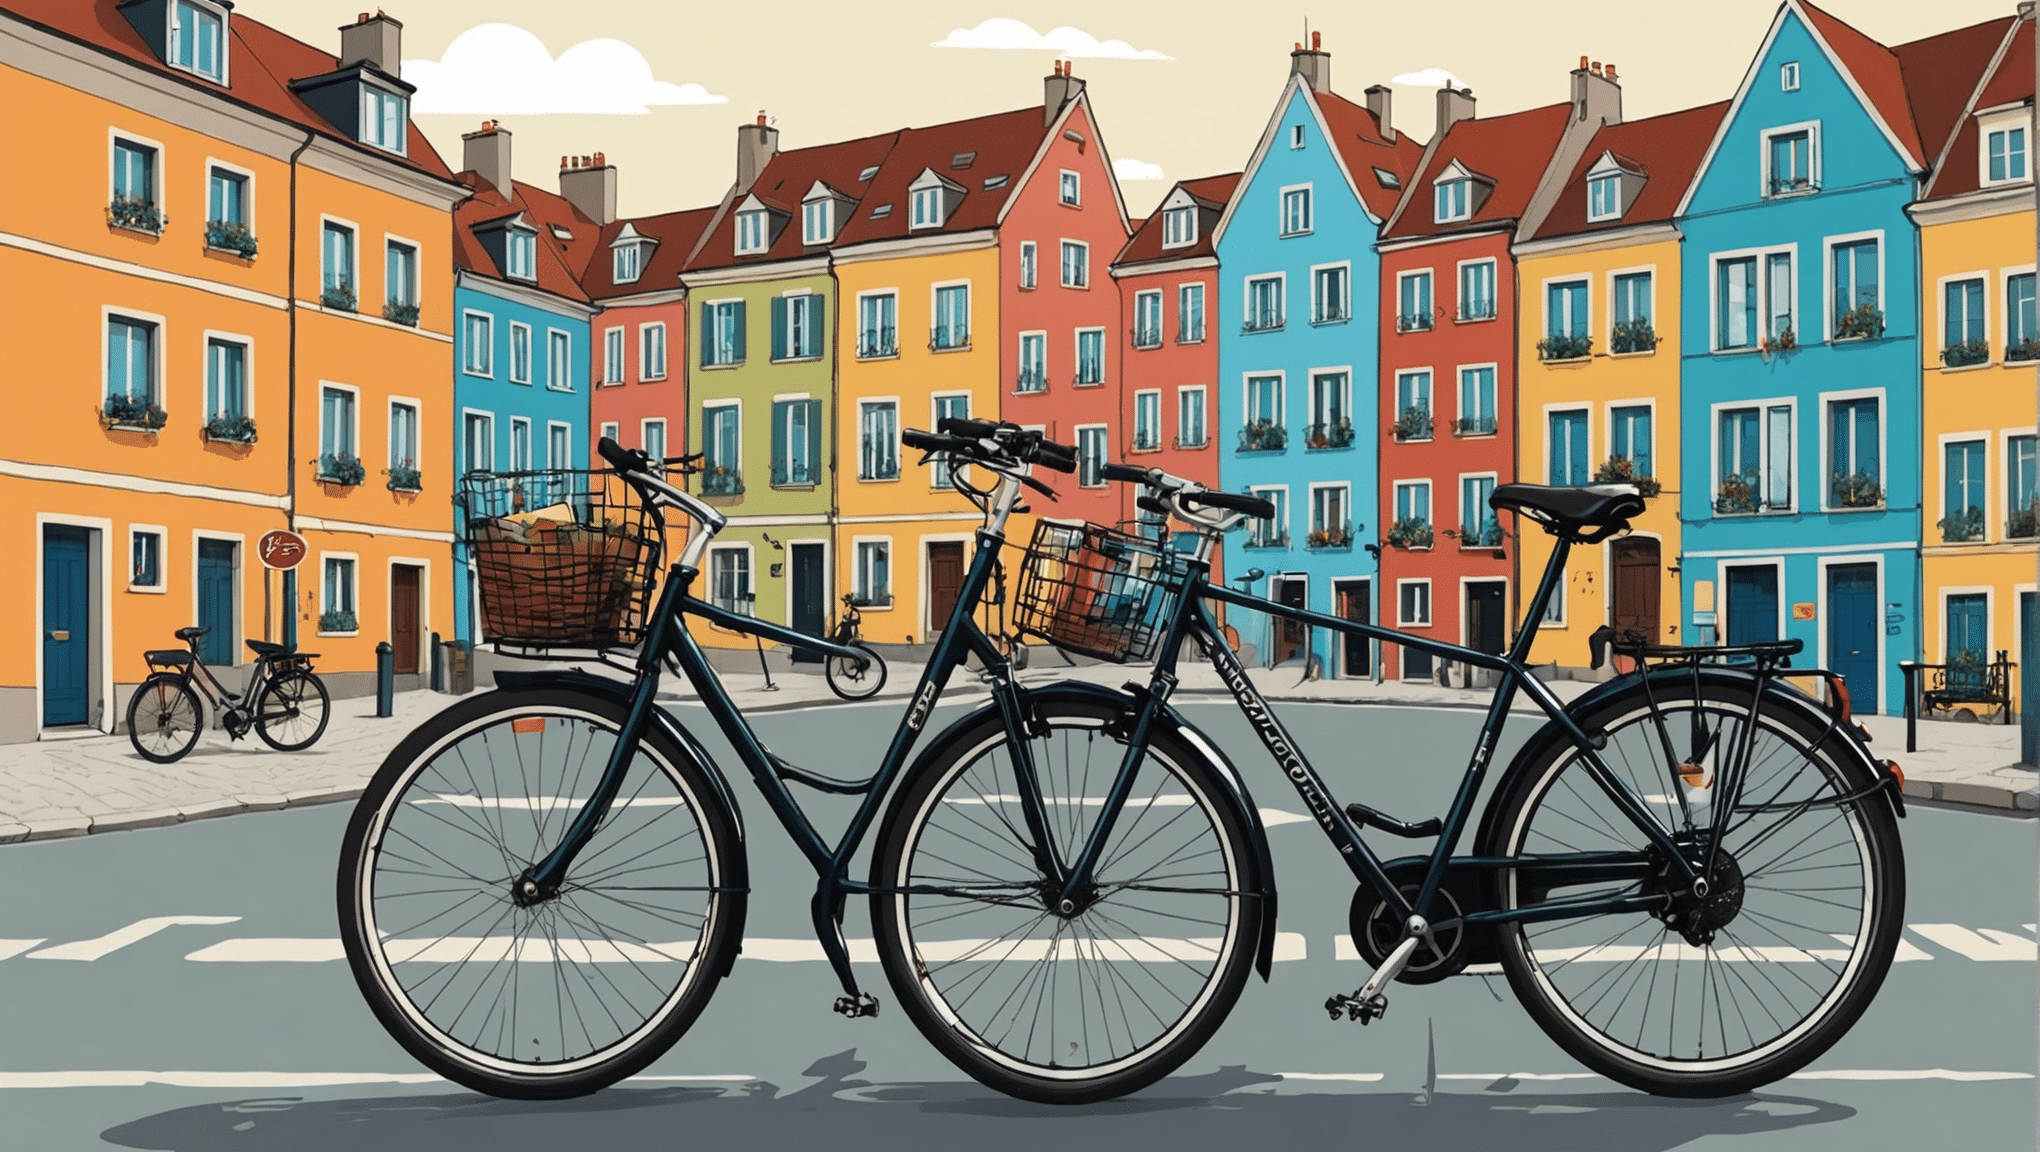 Descubre los destinos imprescindibles para los amantes de los viajes en bicicleta por Europa con nuestra completa guía. ¡Paisajes impresionantes y experiencias únicas te esperan!